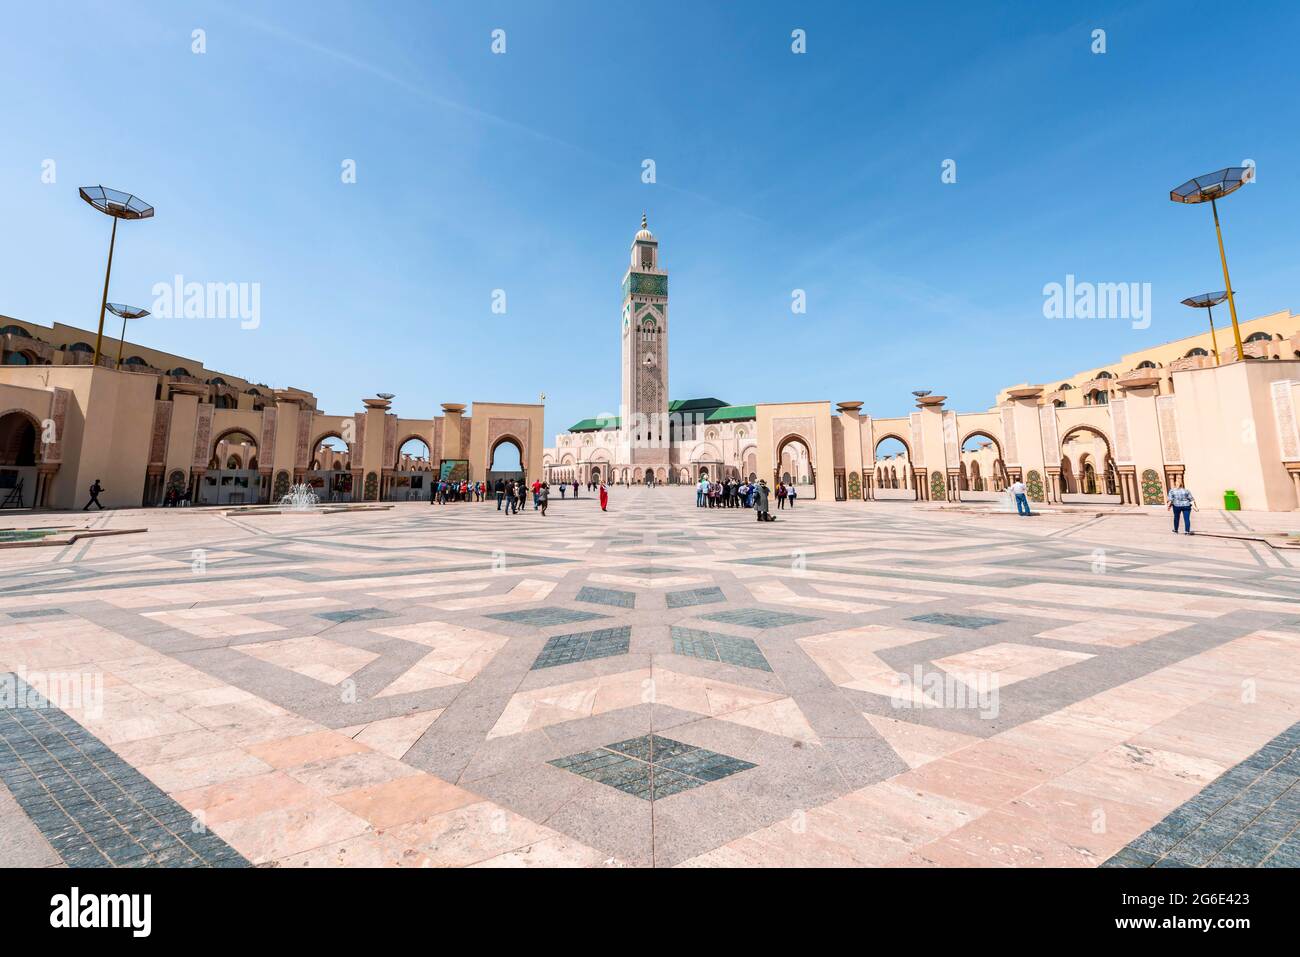 Mosquée Hassan II, Grande Mosquee Hassan II, architecture mauresque, avec le plus haut minaret du monde de 210 m, Casablanca, Maroc Banque D'Images